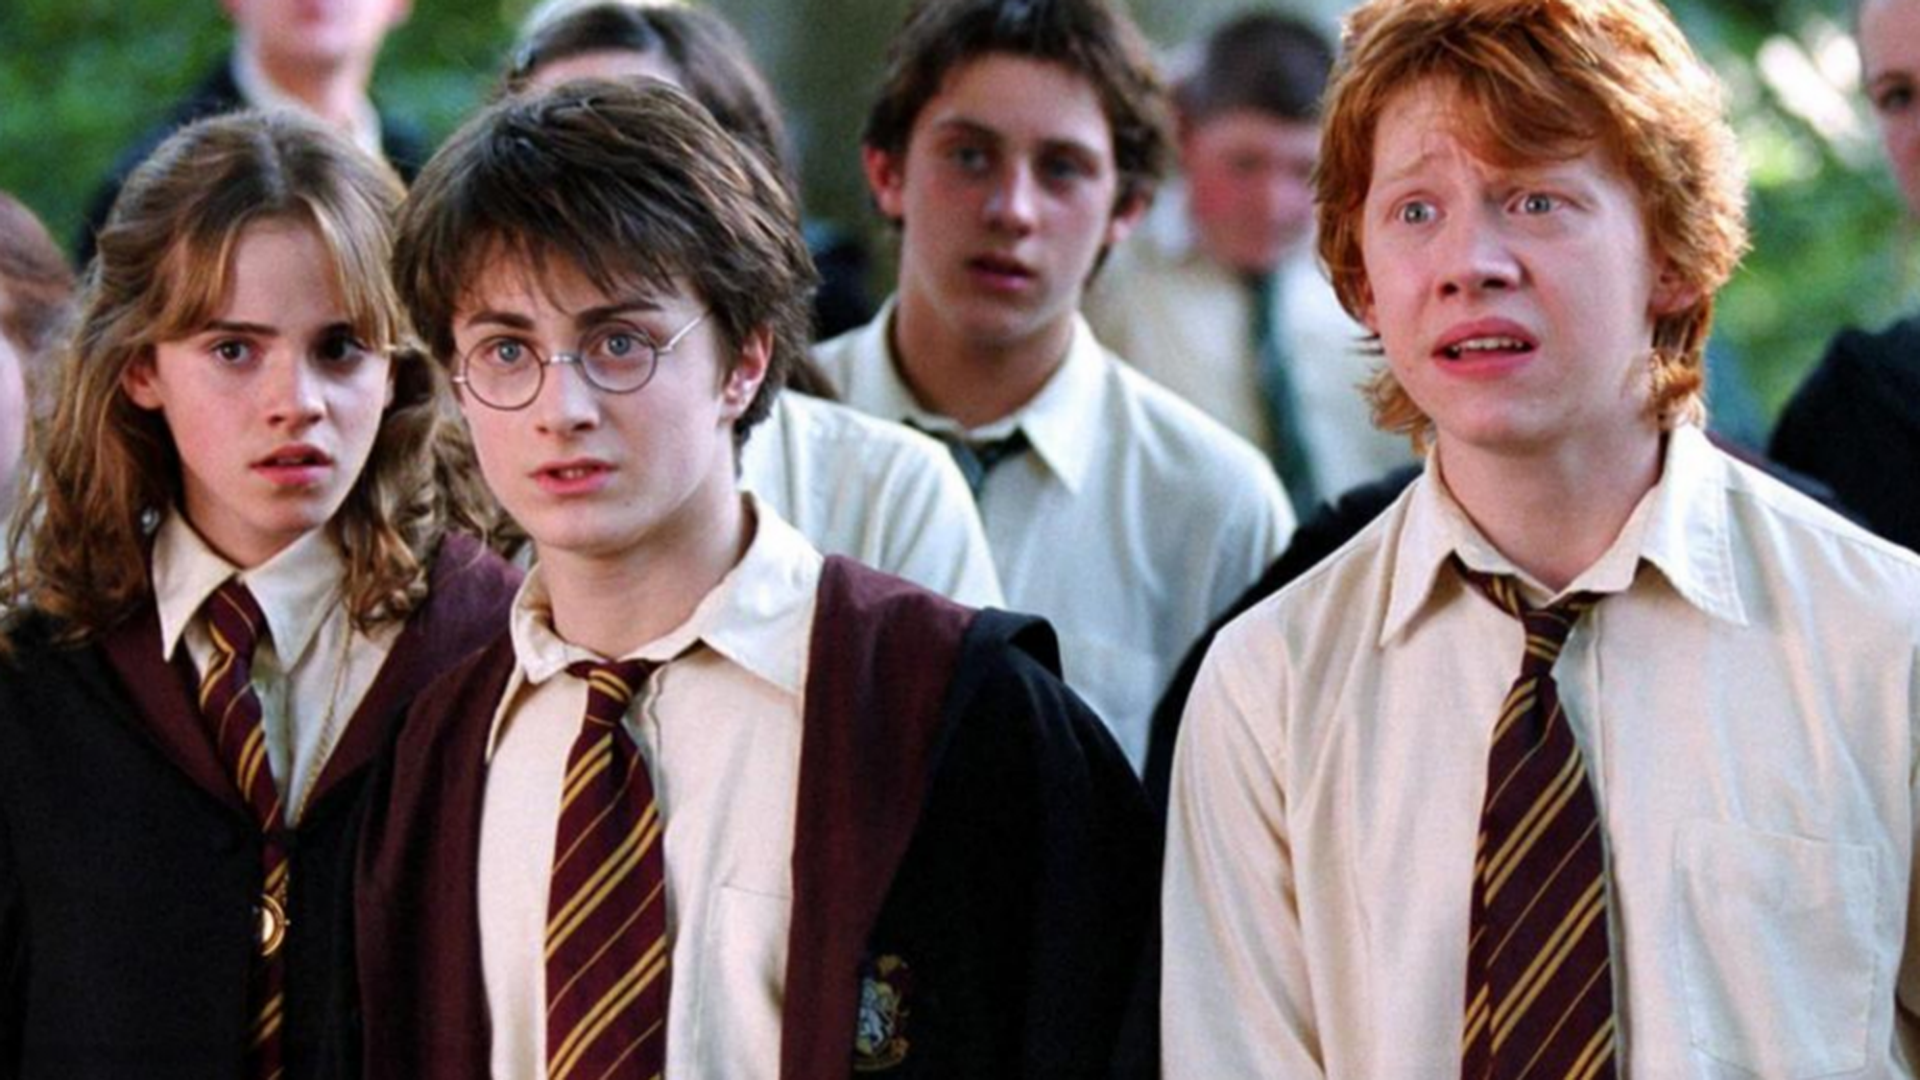 A adaptação da saga Harry Potter para televisão vai contar com novos atores. Afinal, os protagonistas originais já têm mais de trinta anos.